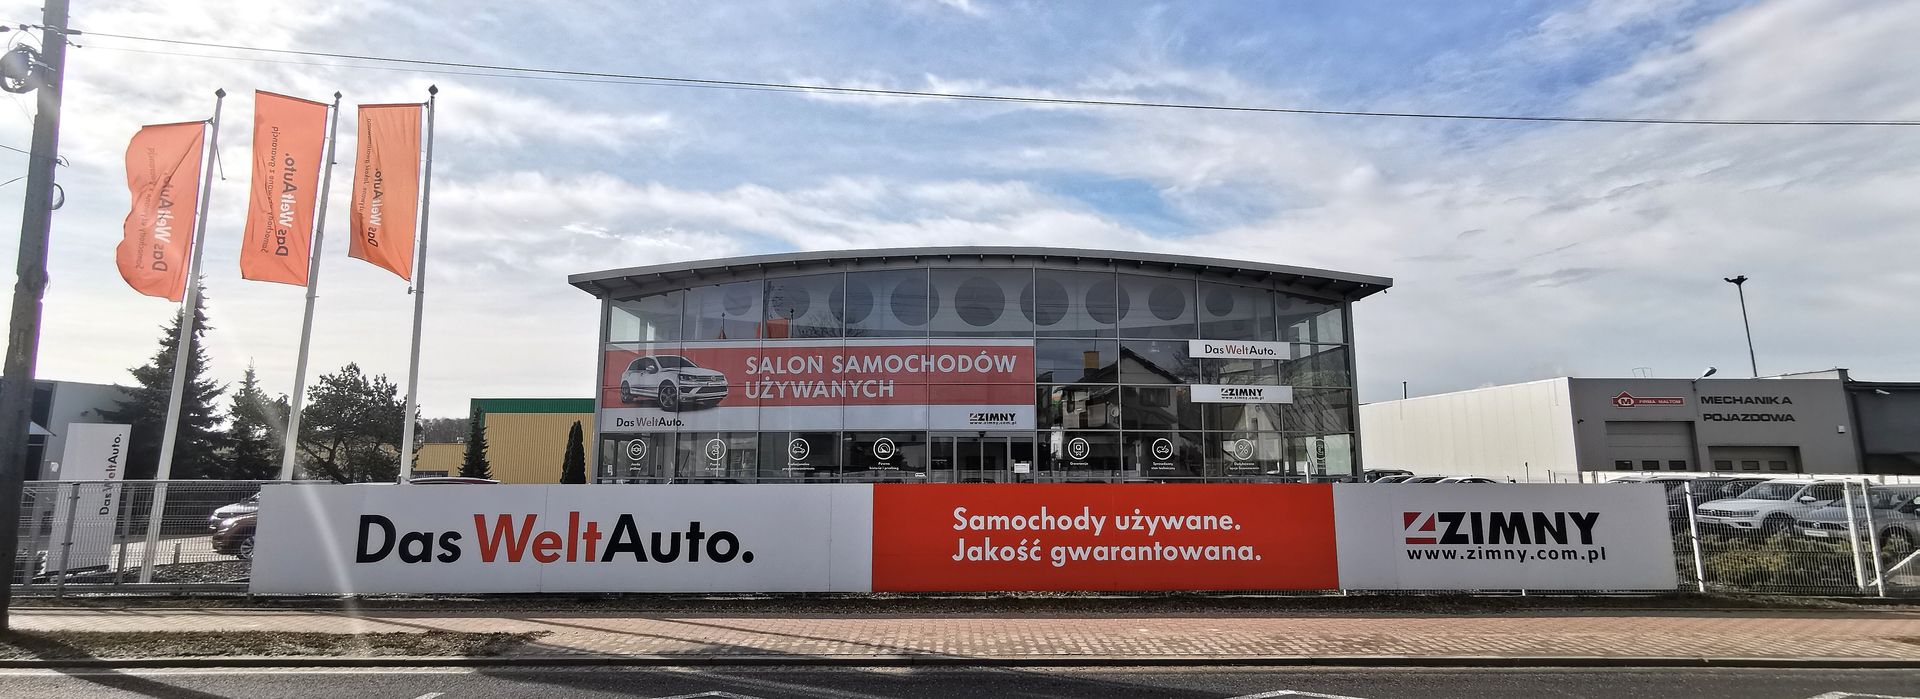 Zimny Das WeltAuto Tomaszów Mazowiecki top banner